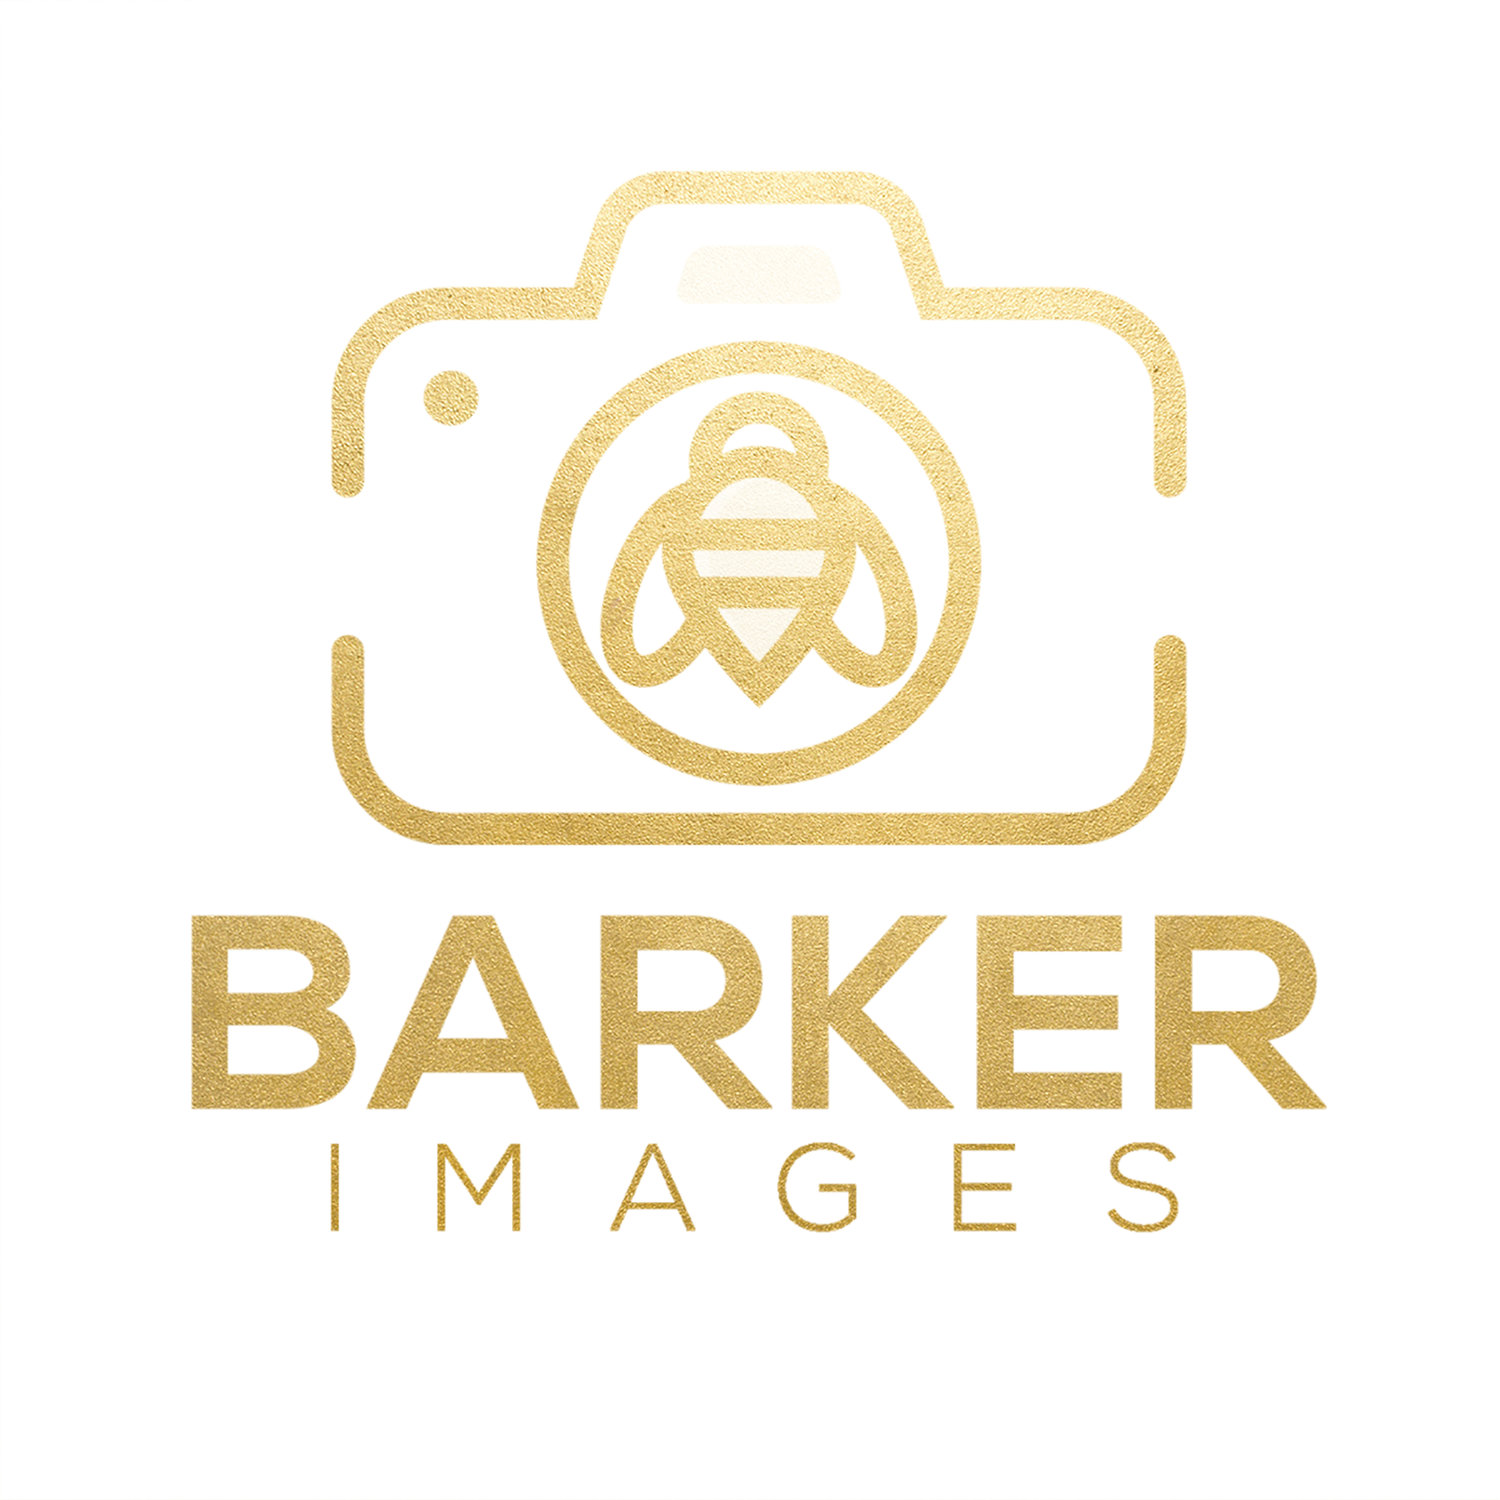 Barker Images